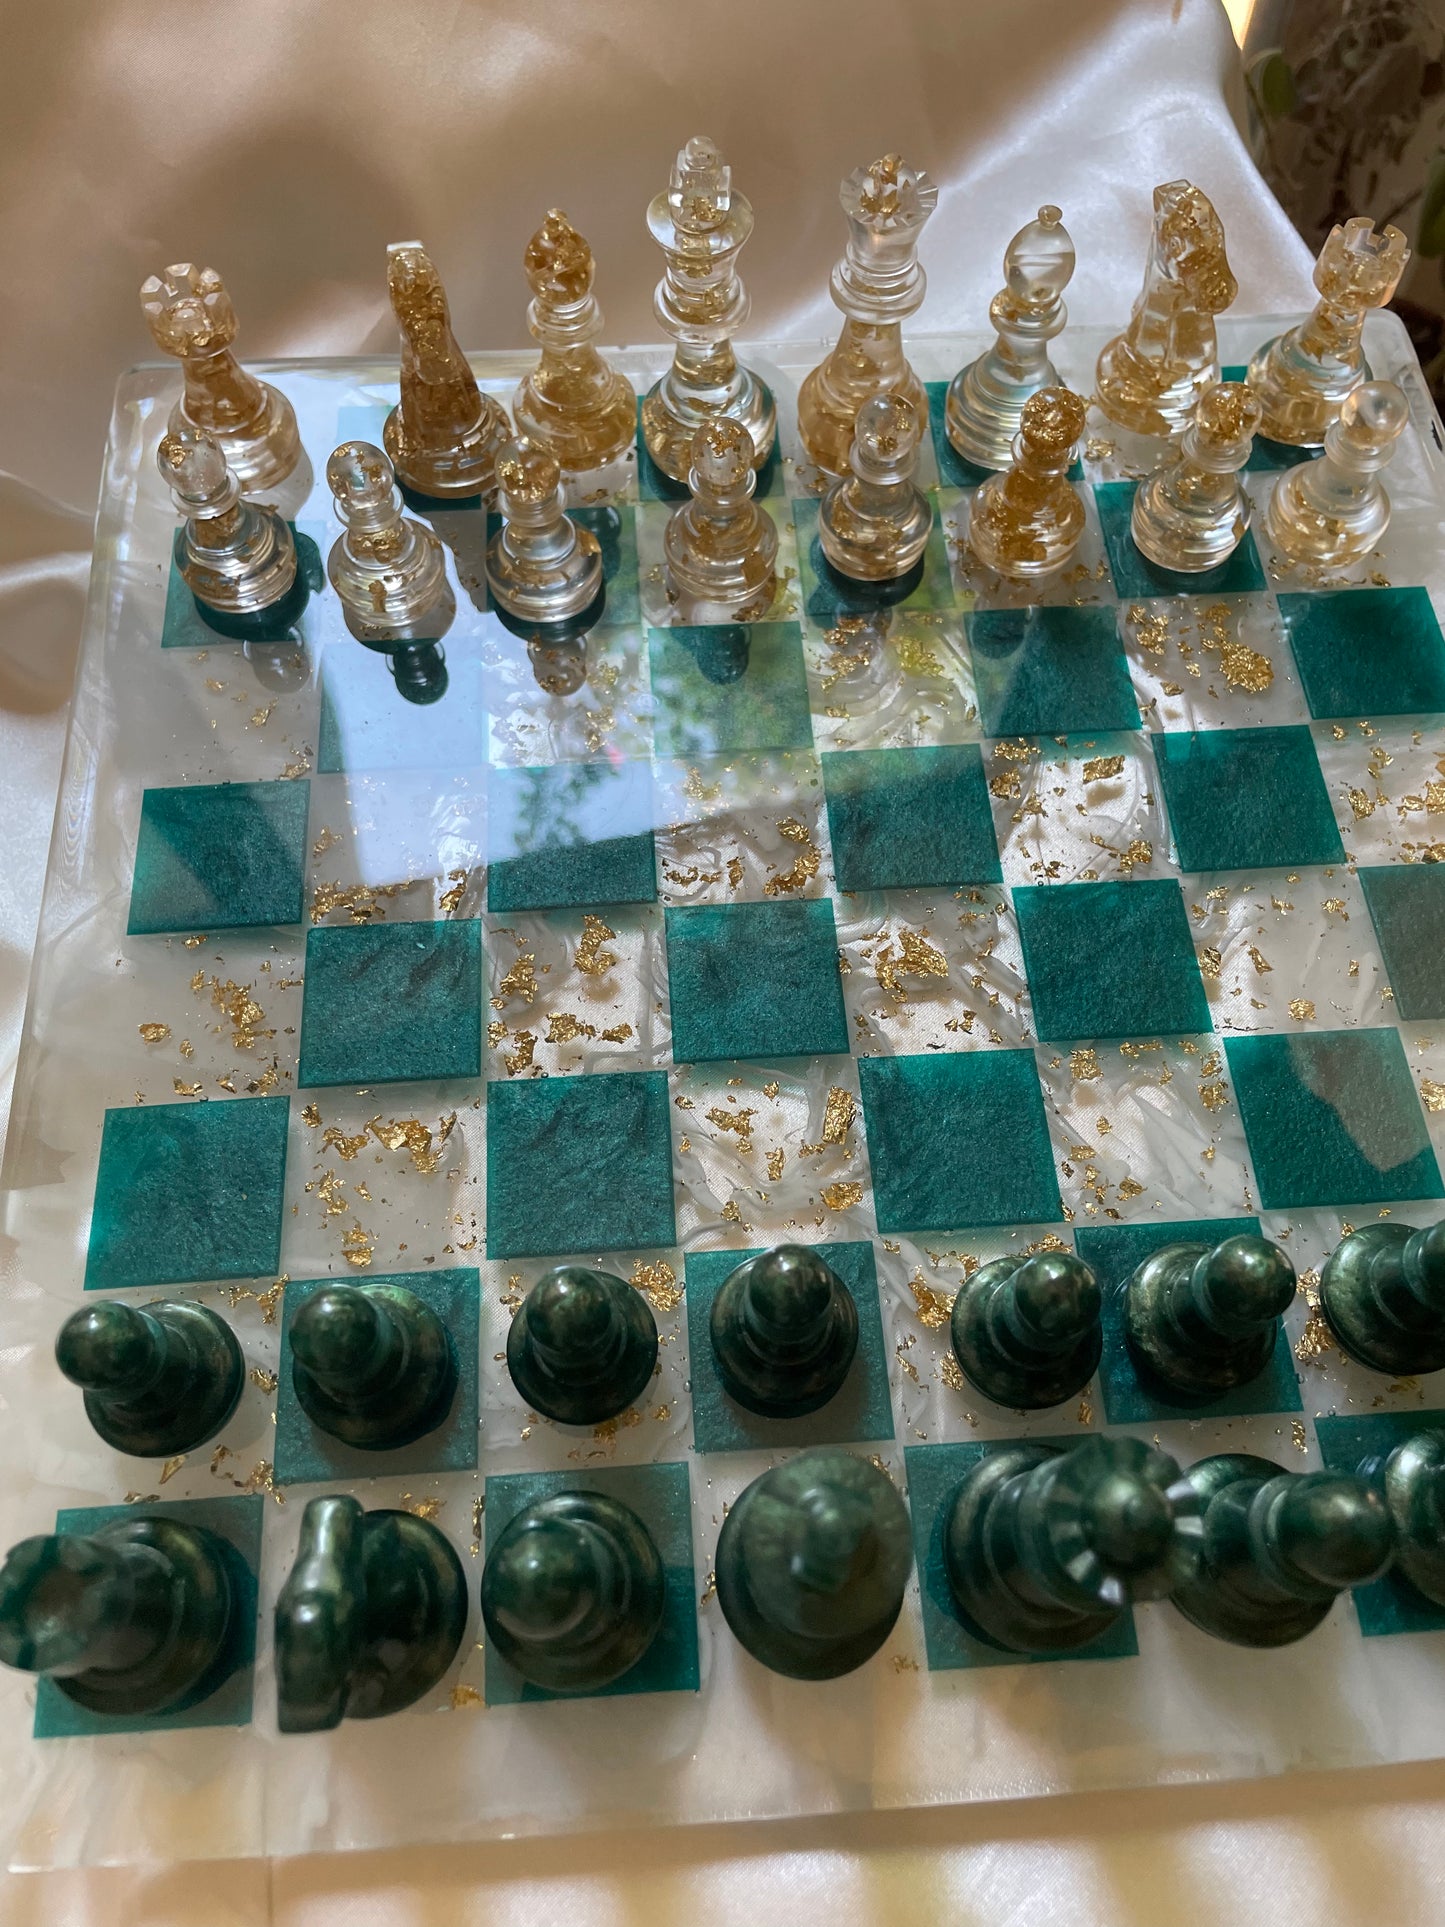 Tablero de ajedrez de mármol verde esmeralda y oro.